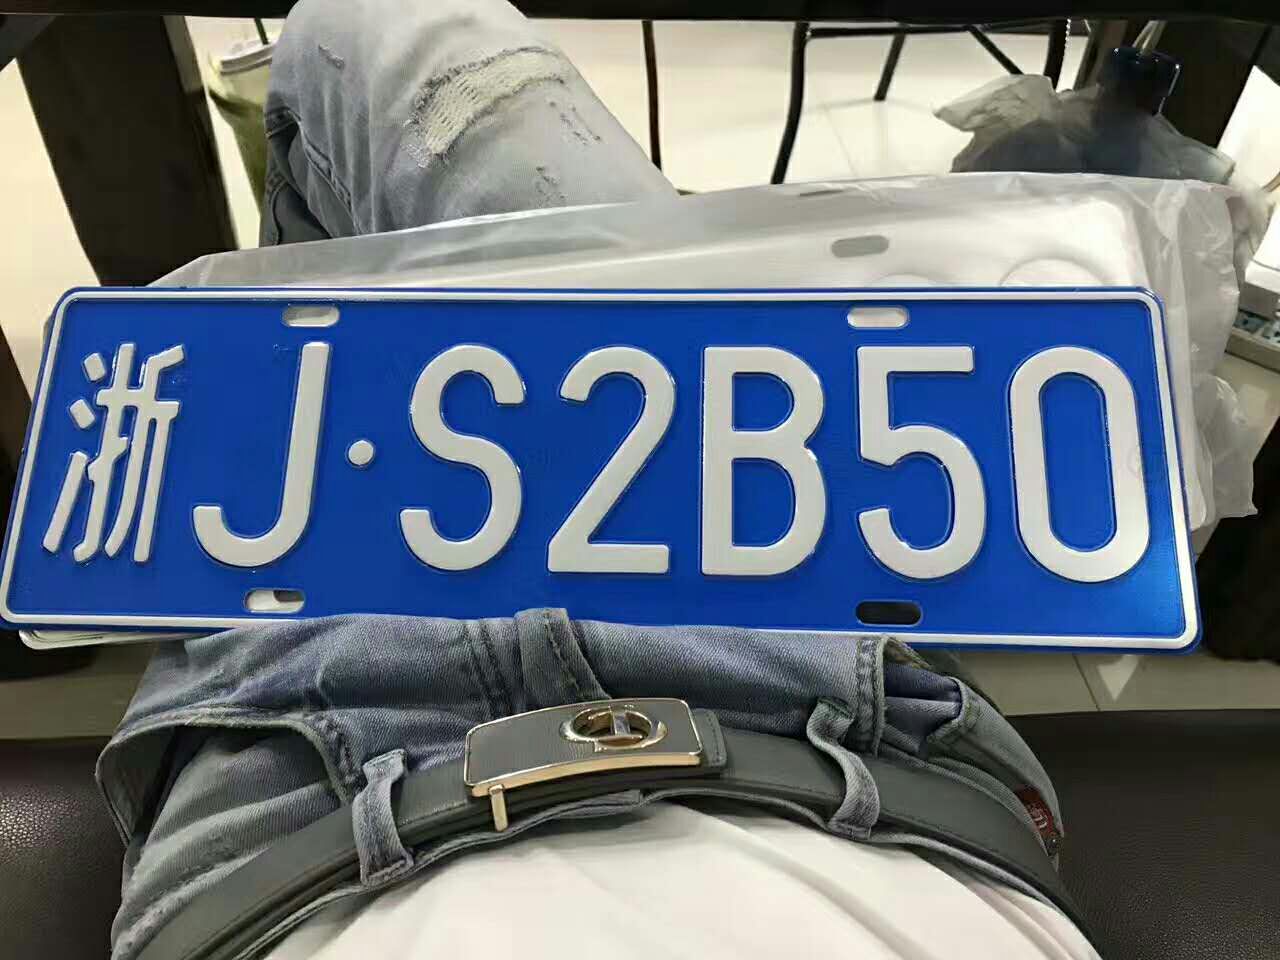 浙jb35cm车牌照图片图片